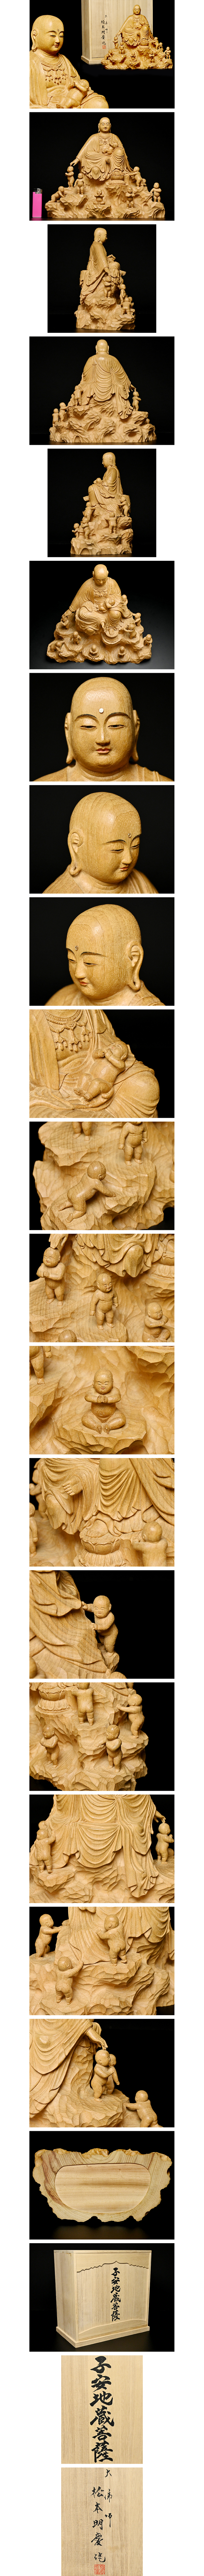 低価国産仏教美術 仏像 木彫 京仏師 仏像